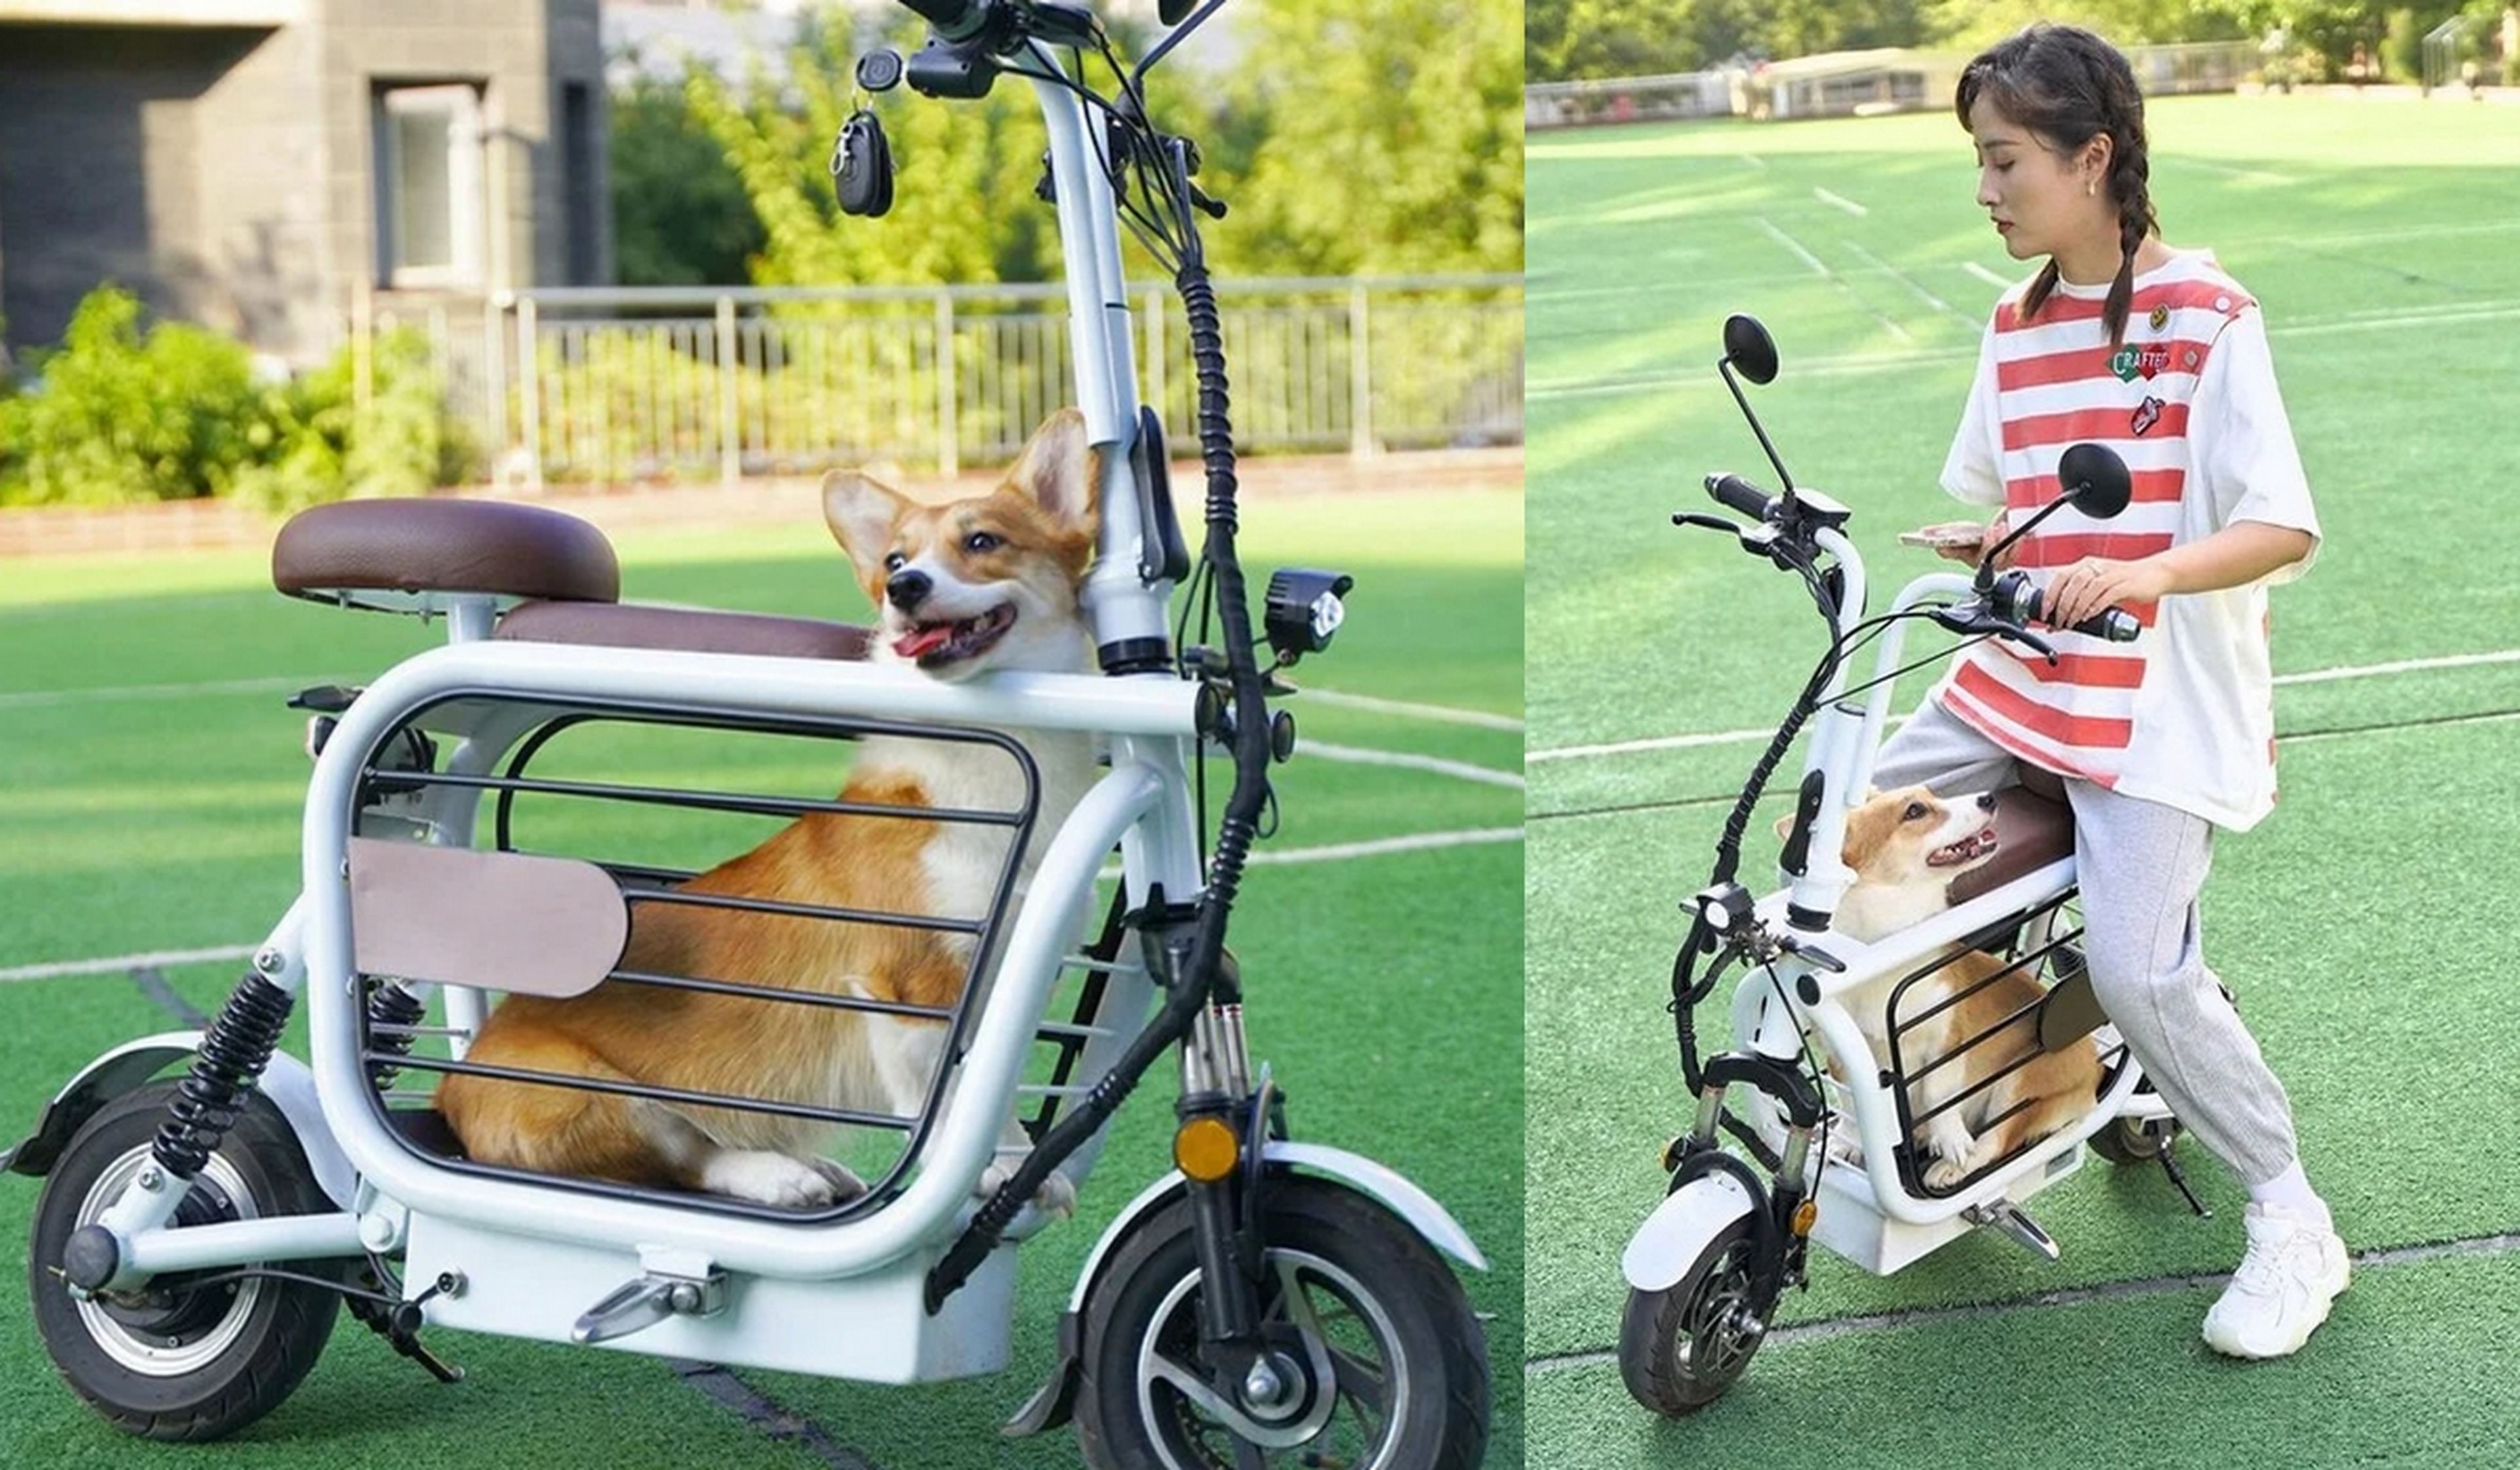 Mopet, la moto eléctrica para llevar a tu mascota de paseo